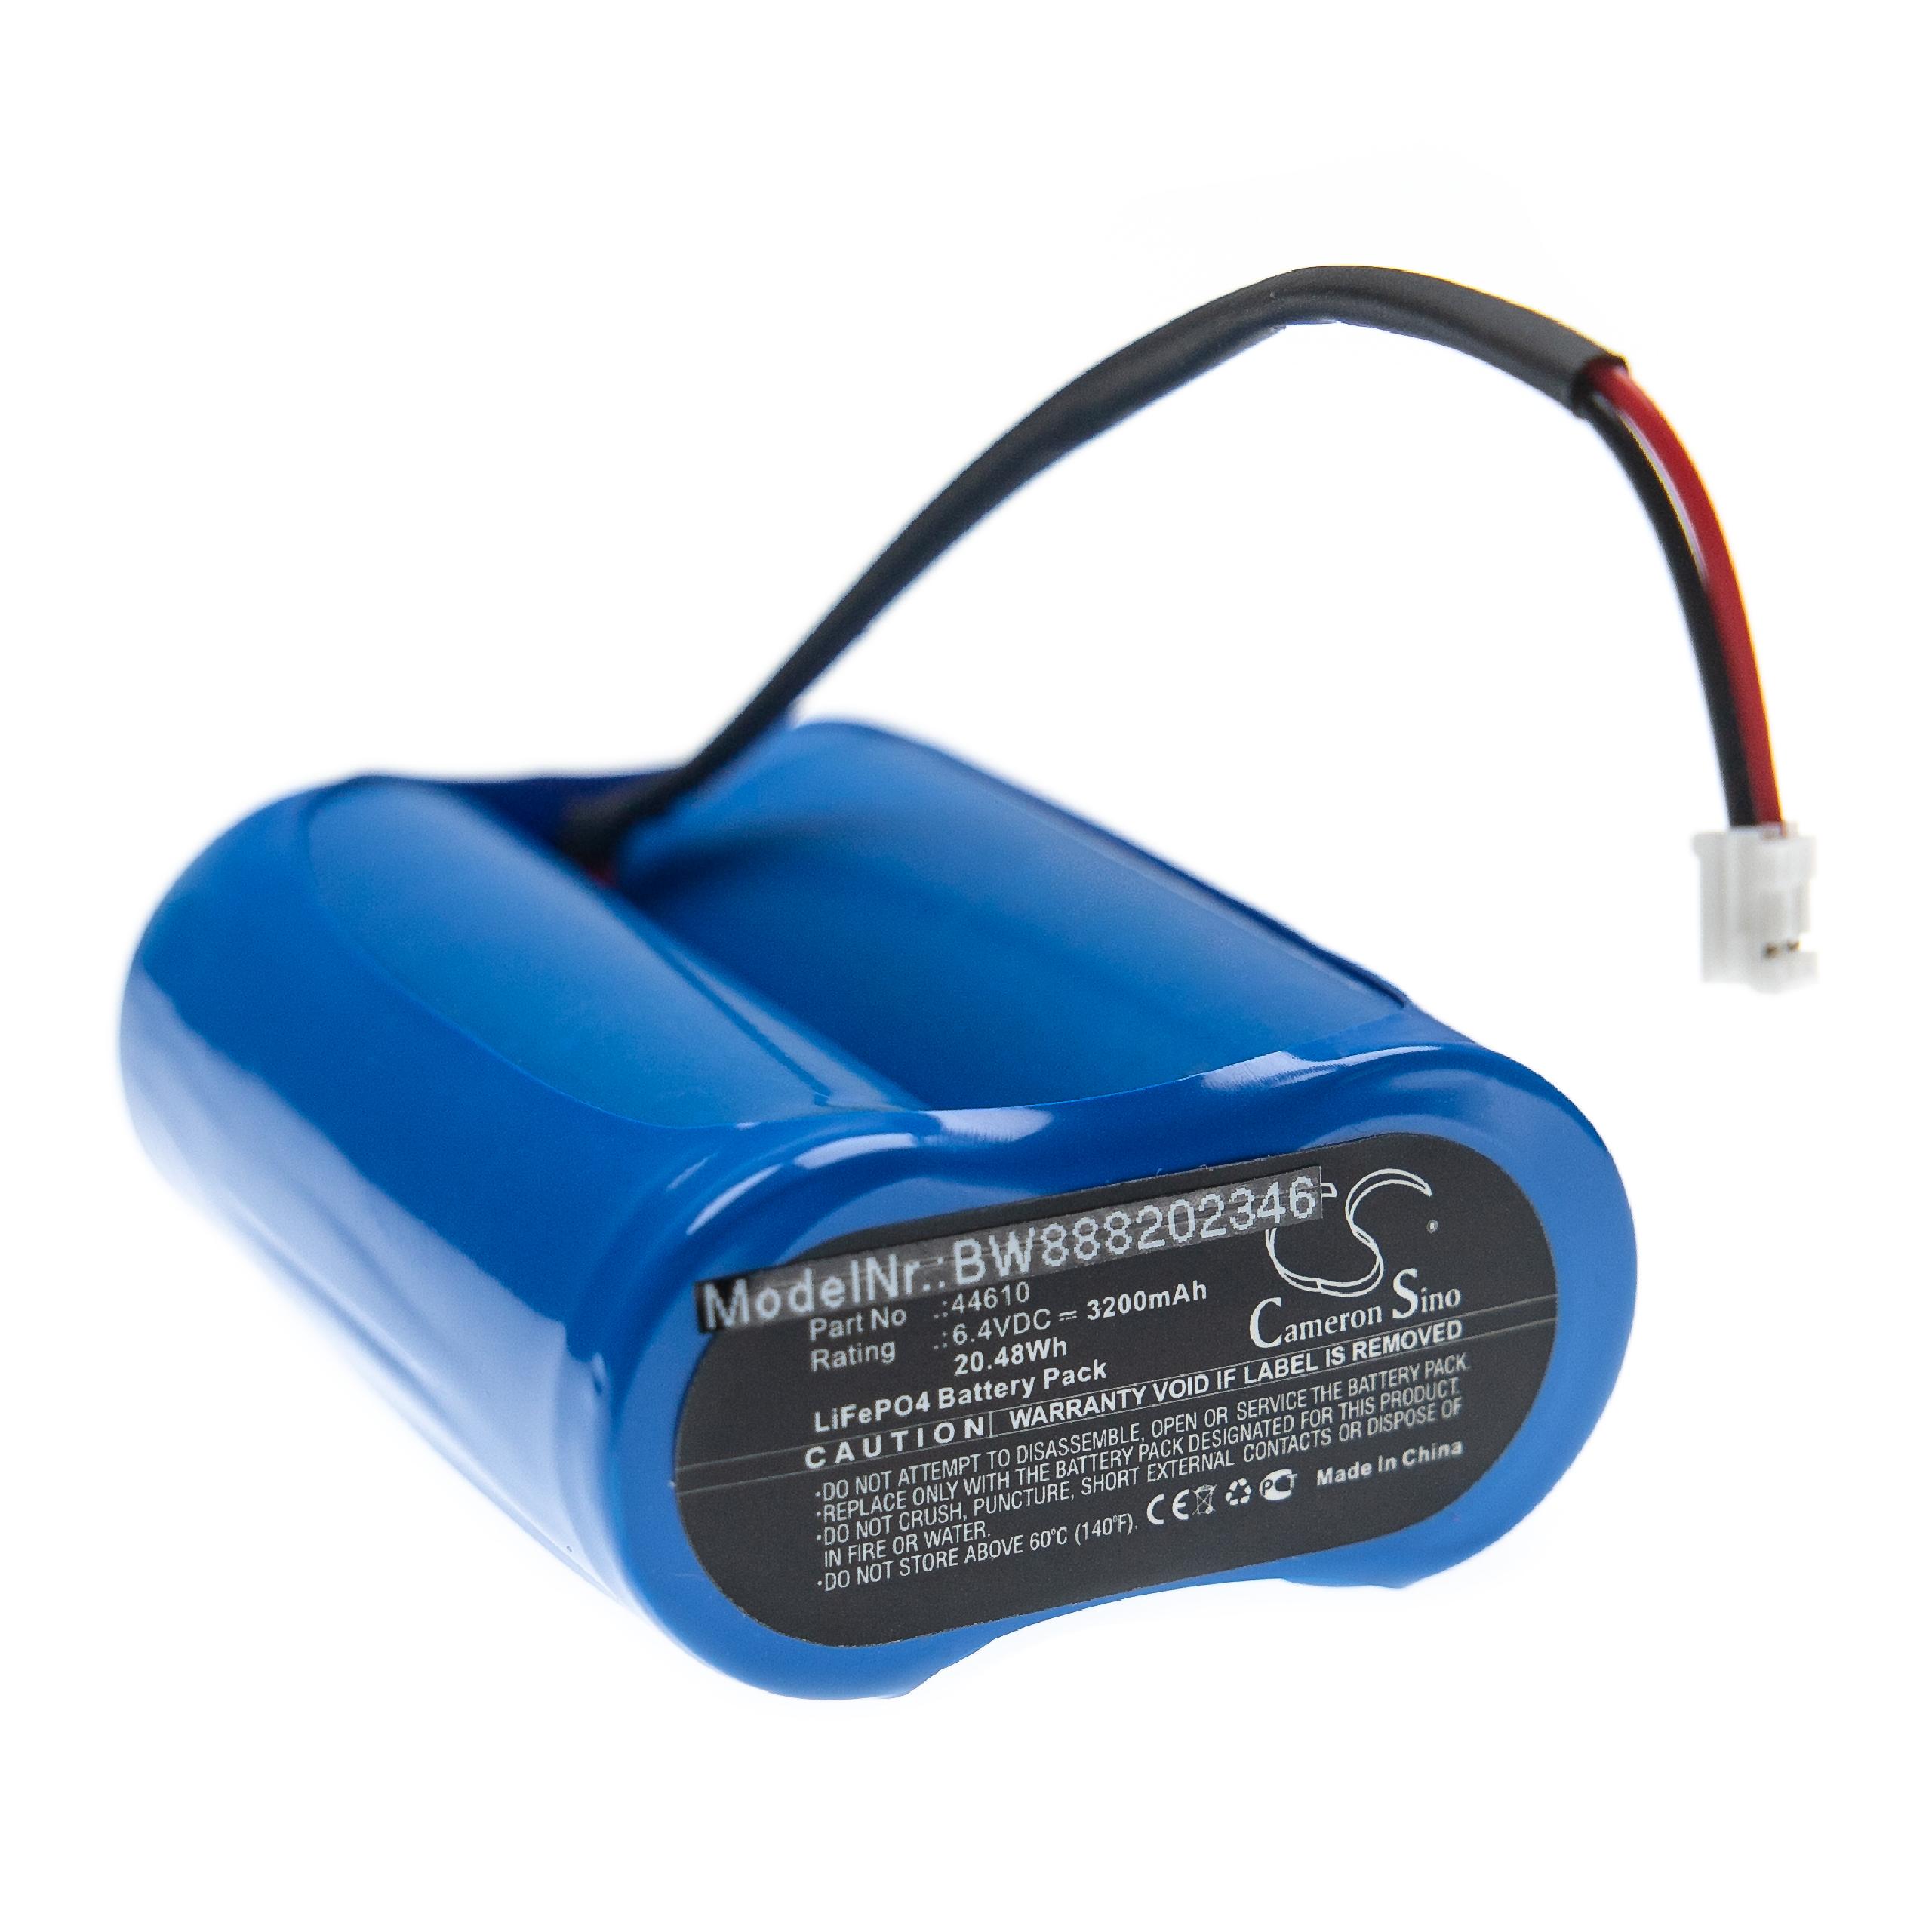 Akumulator do latarki czołowej zamiennik Streamlight 44610 - 3200 mAh 6,4 V LiFePO4